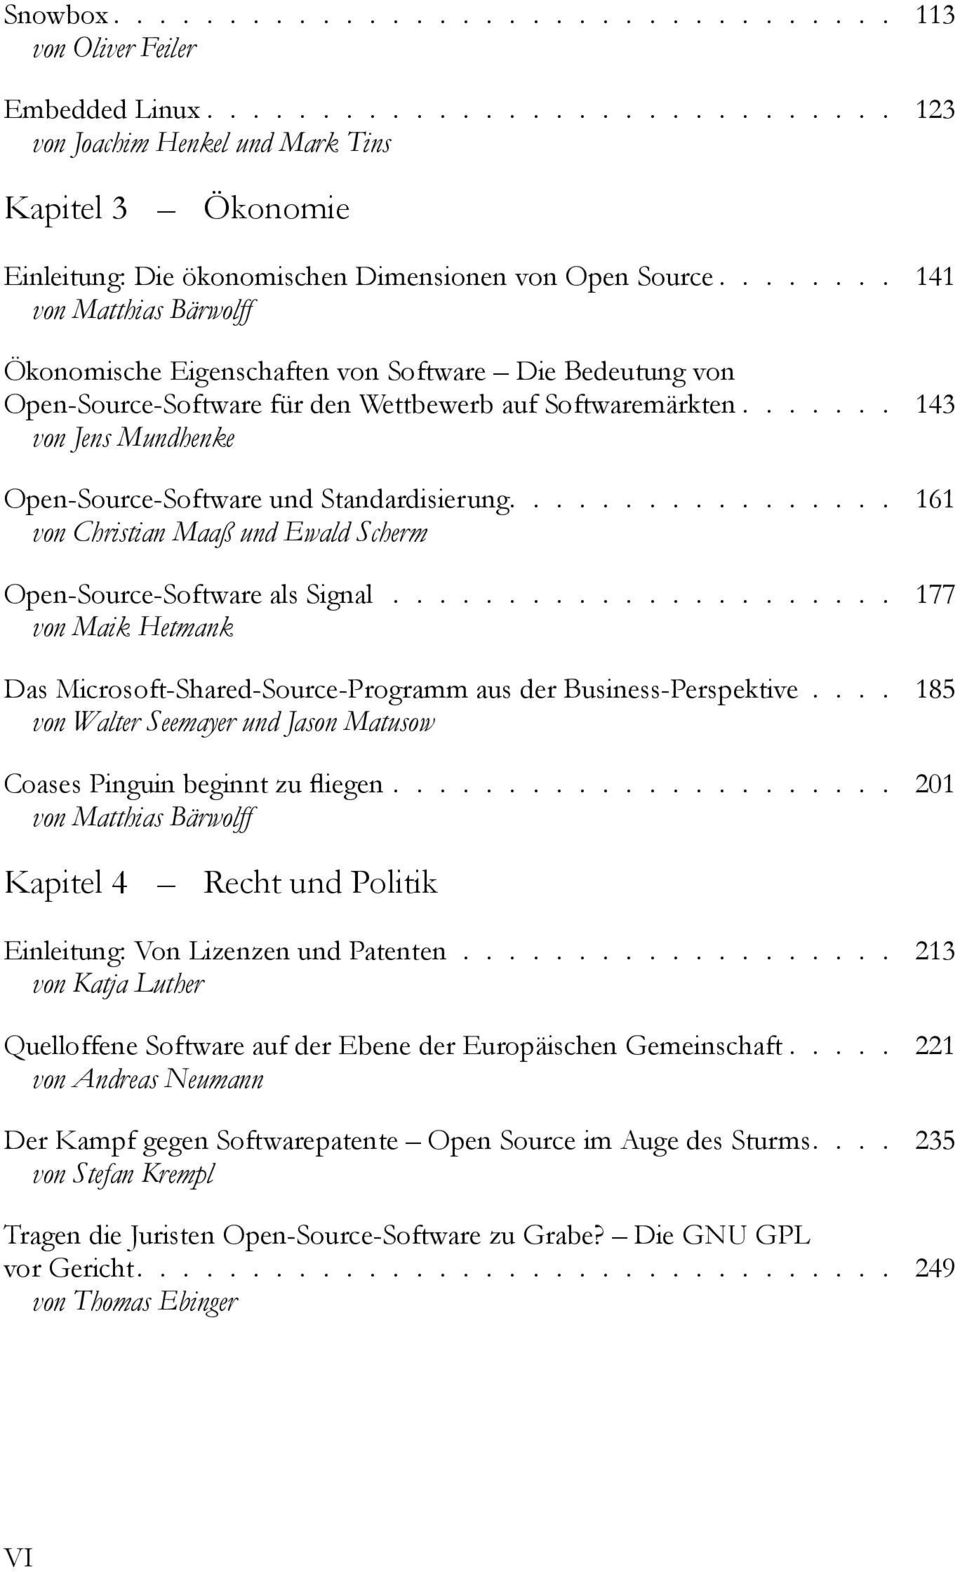 ...... 143 von Jens Mundhenke Open-Source-Software und Standardisierung................. 161 von Christian Maaÿ und Ewald Scherm Open-Source-Software als Signal.